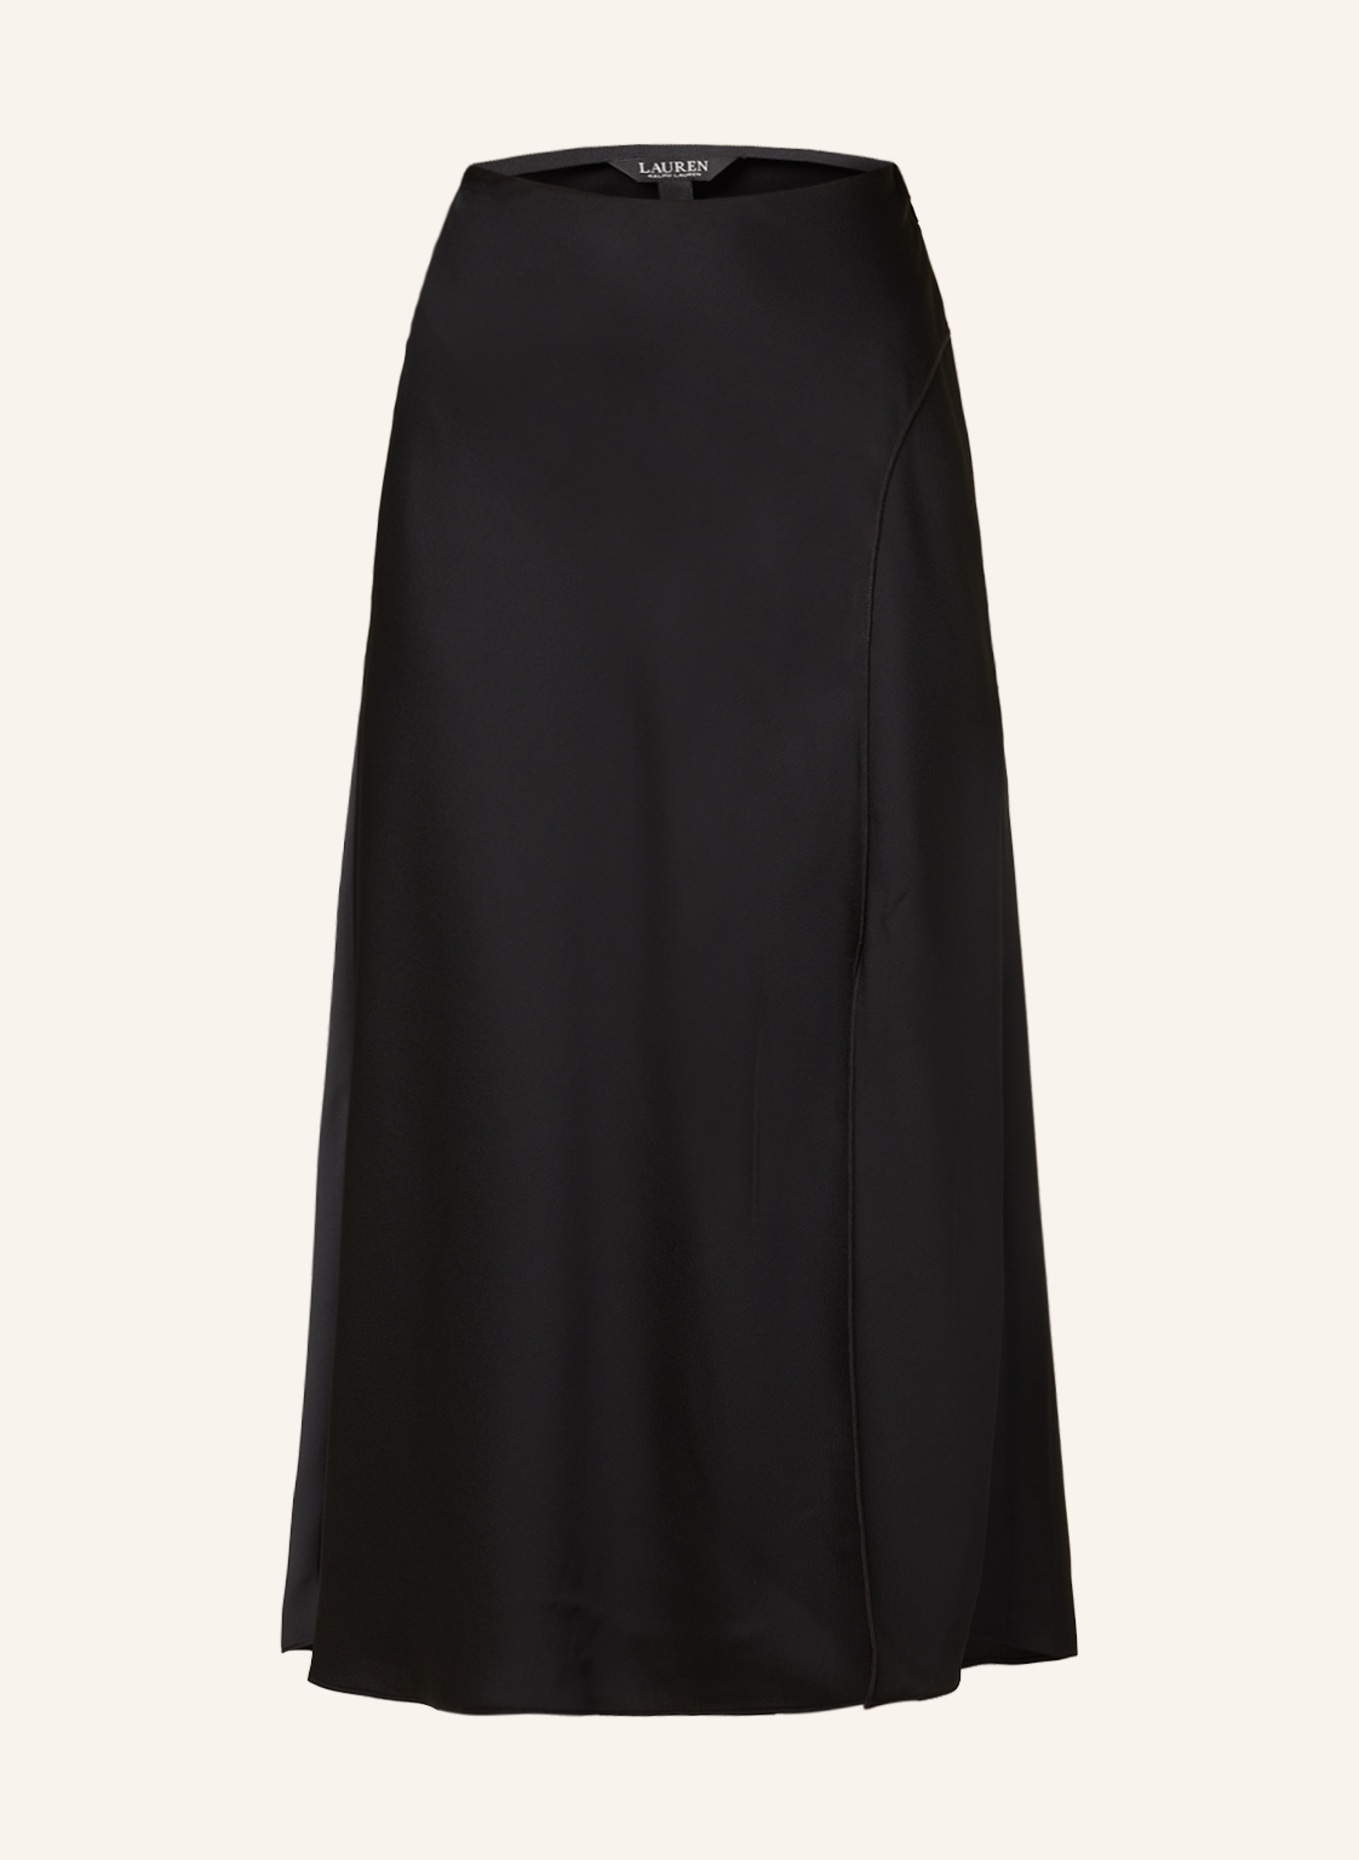 LAUREN RALPH LAUREN Satin skirt, Color: BLACK (Image 1)